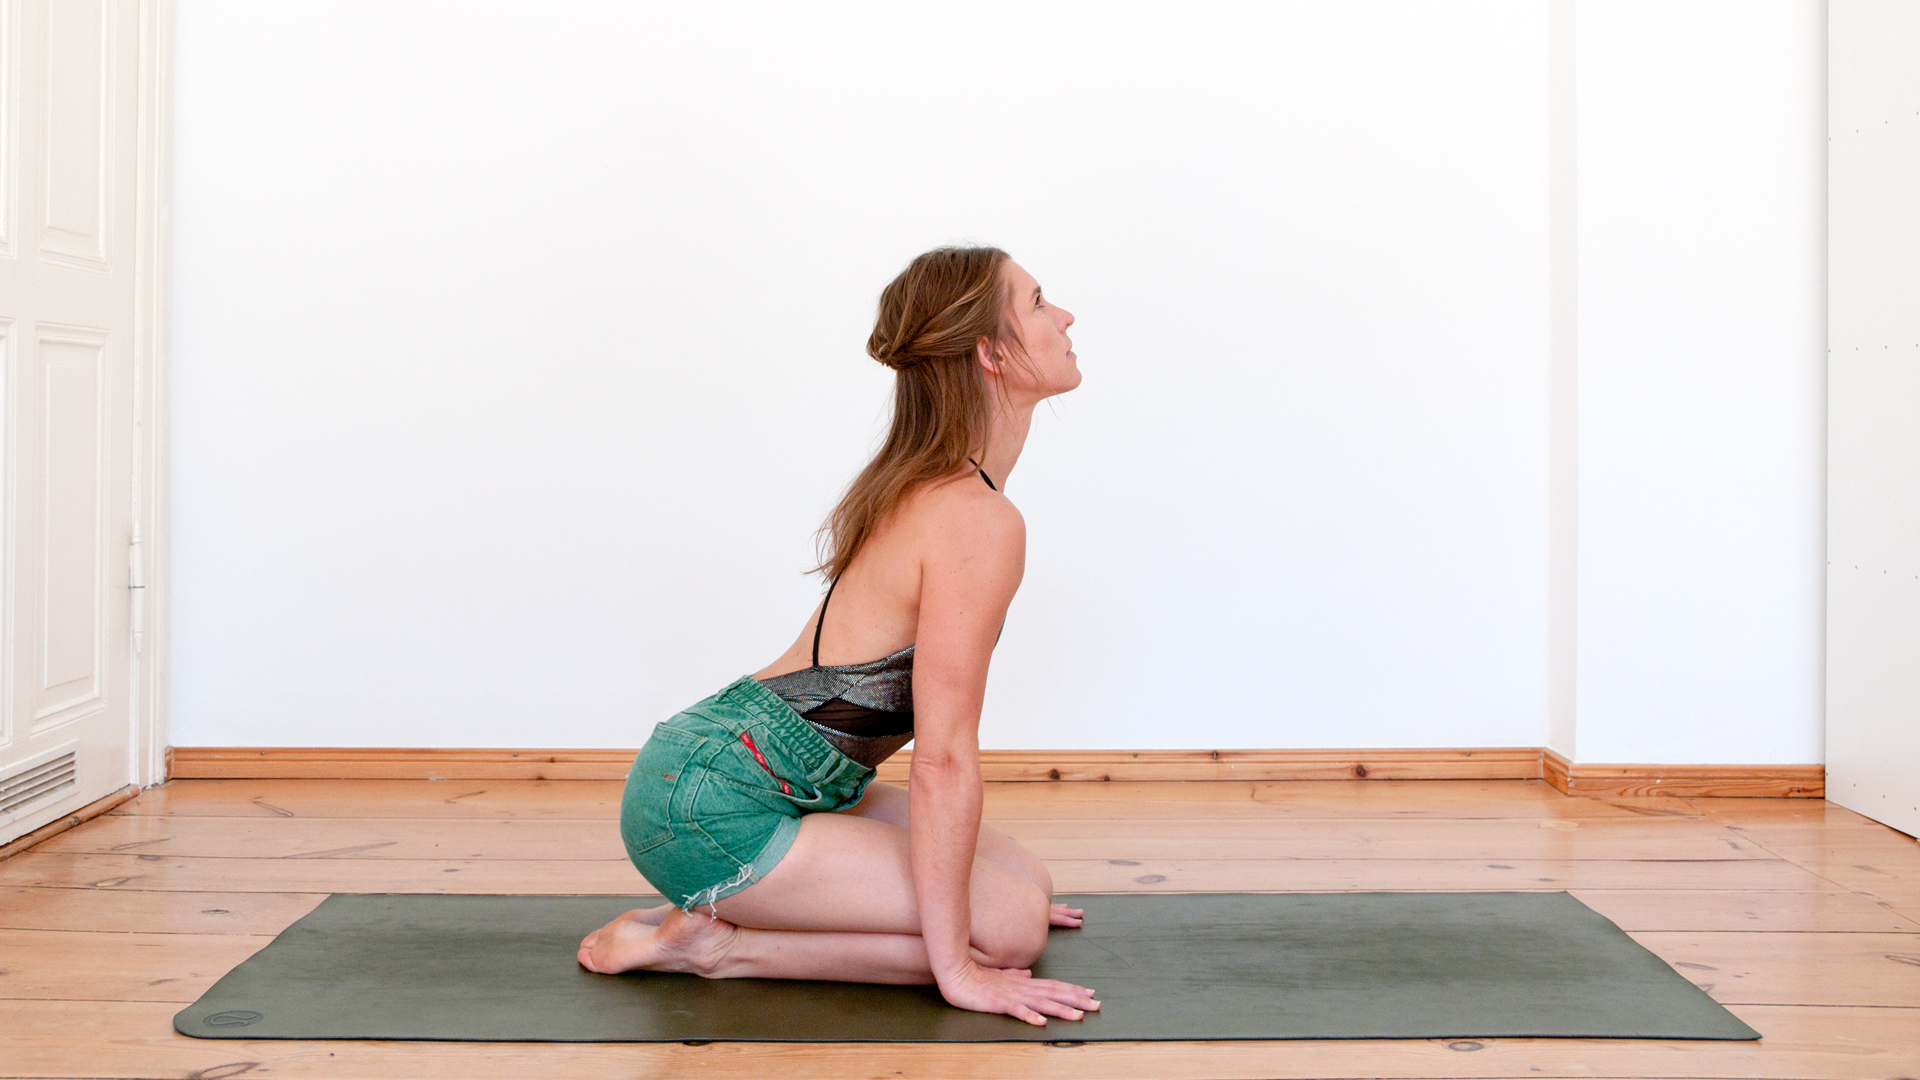 Eva Kaczor shares Breath Exercise from Kundalini Yoga with Foodadit